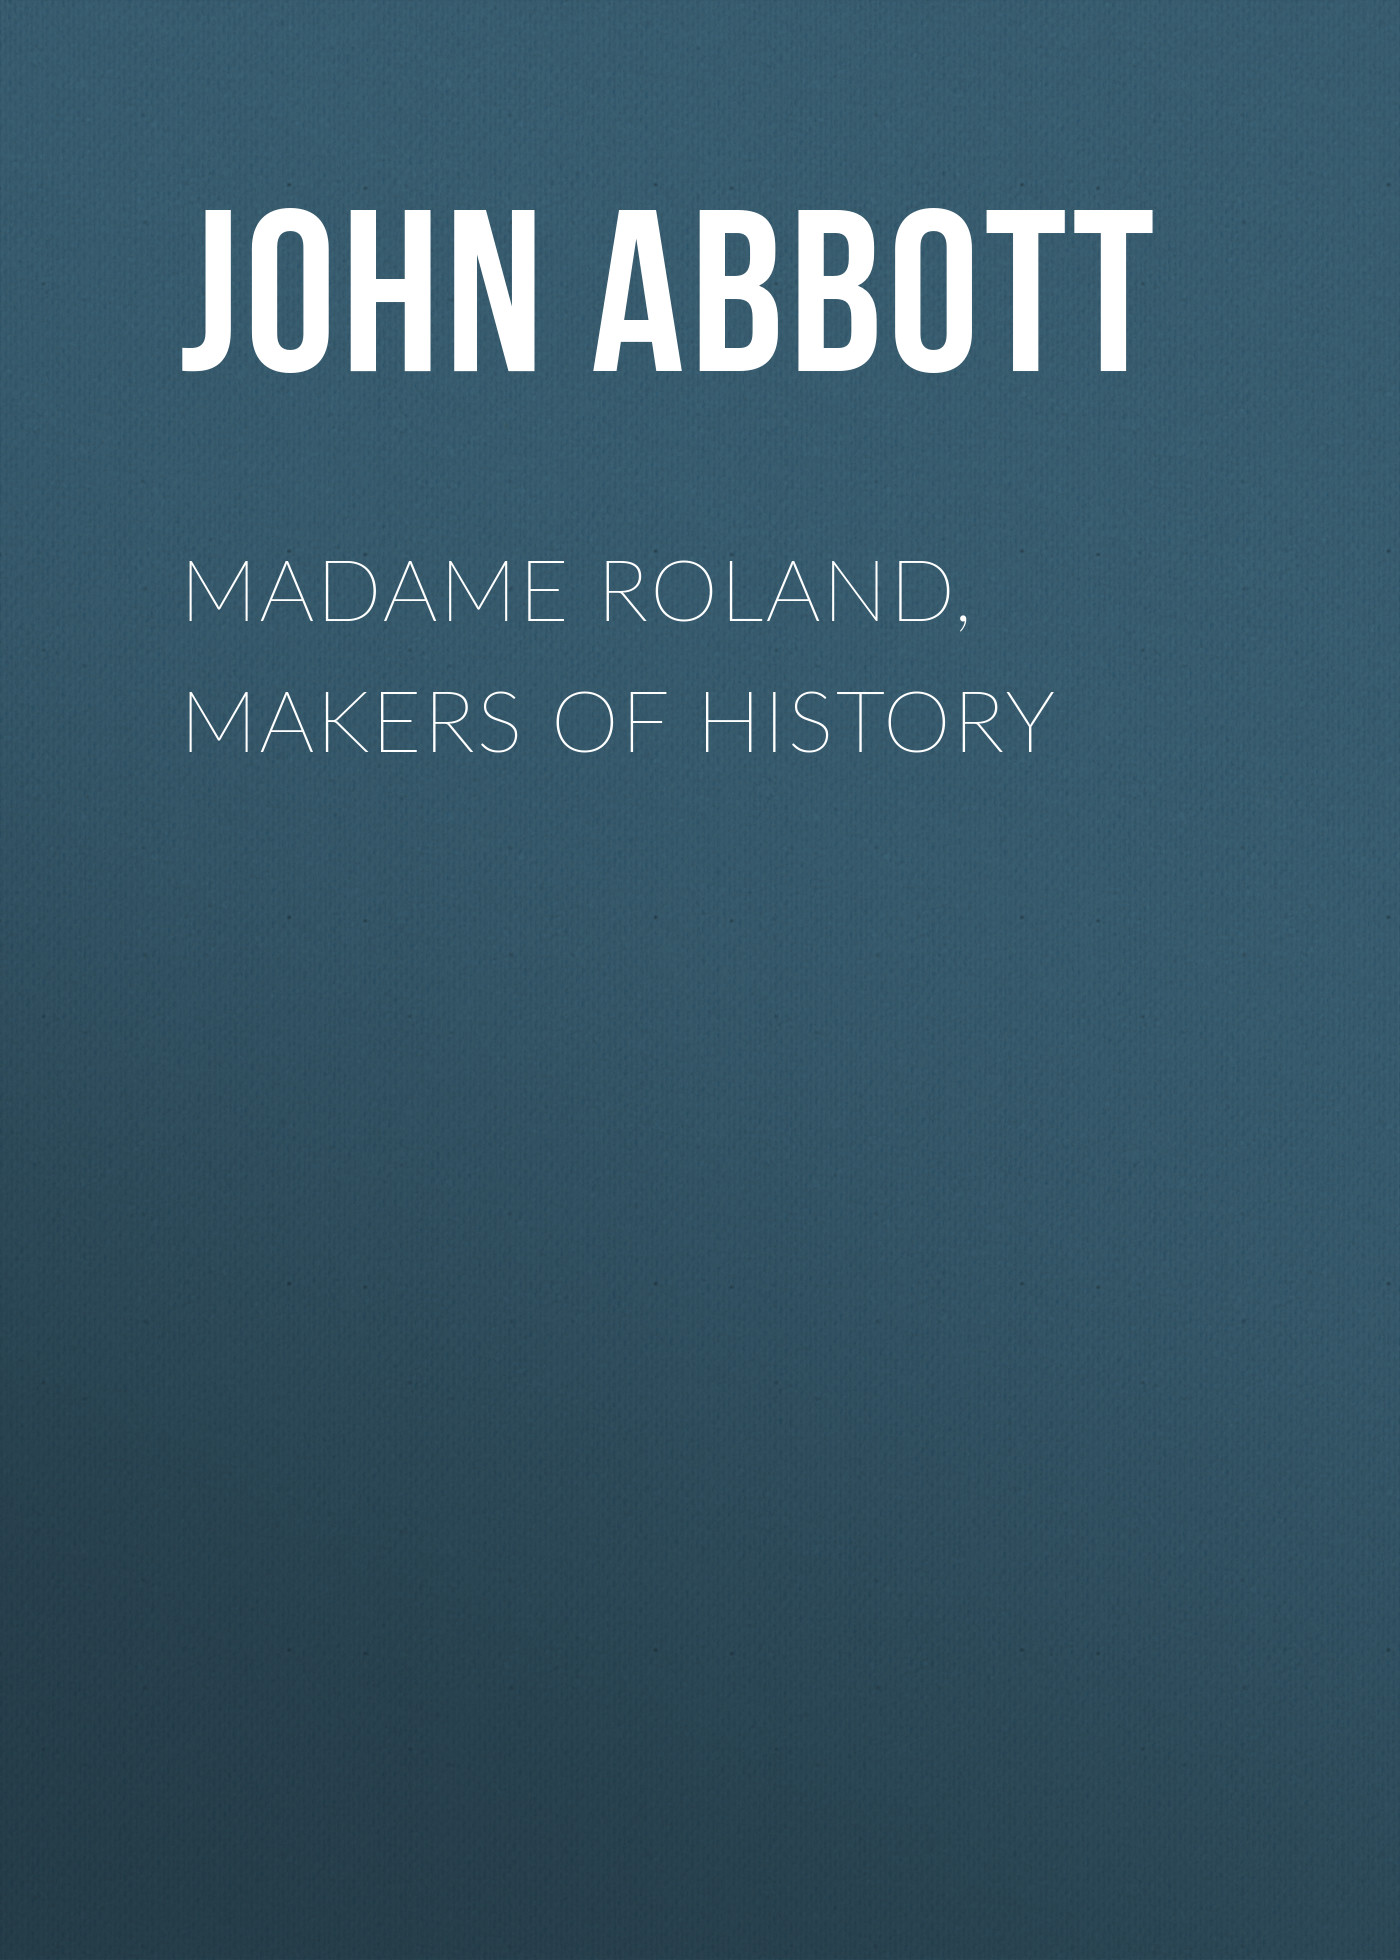 Книга Madame Roland, Makers of History из серии , созданная John Abbott, может относится к жанру Зарубежная старинная литература, Зарубежная классика, Историческая литература. Стоимость электронной книги Madame Roland, Makers of History с идентификатором 24166036 составляет 5.99 руб.